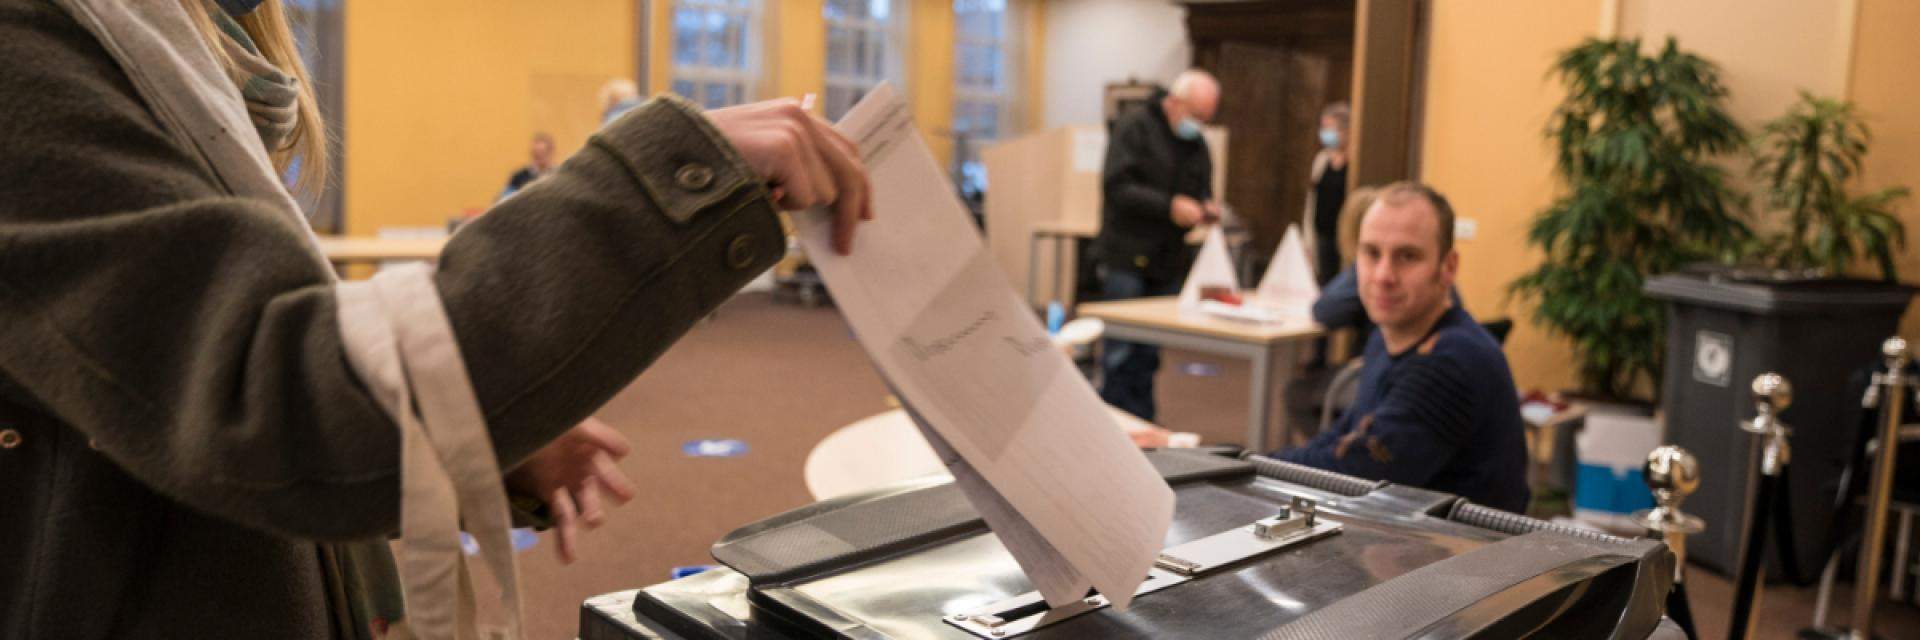 Decoratieve afbeelding van iemand die een stembiljet in de stembus steekt